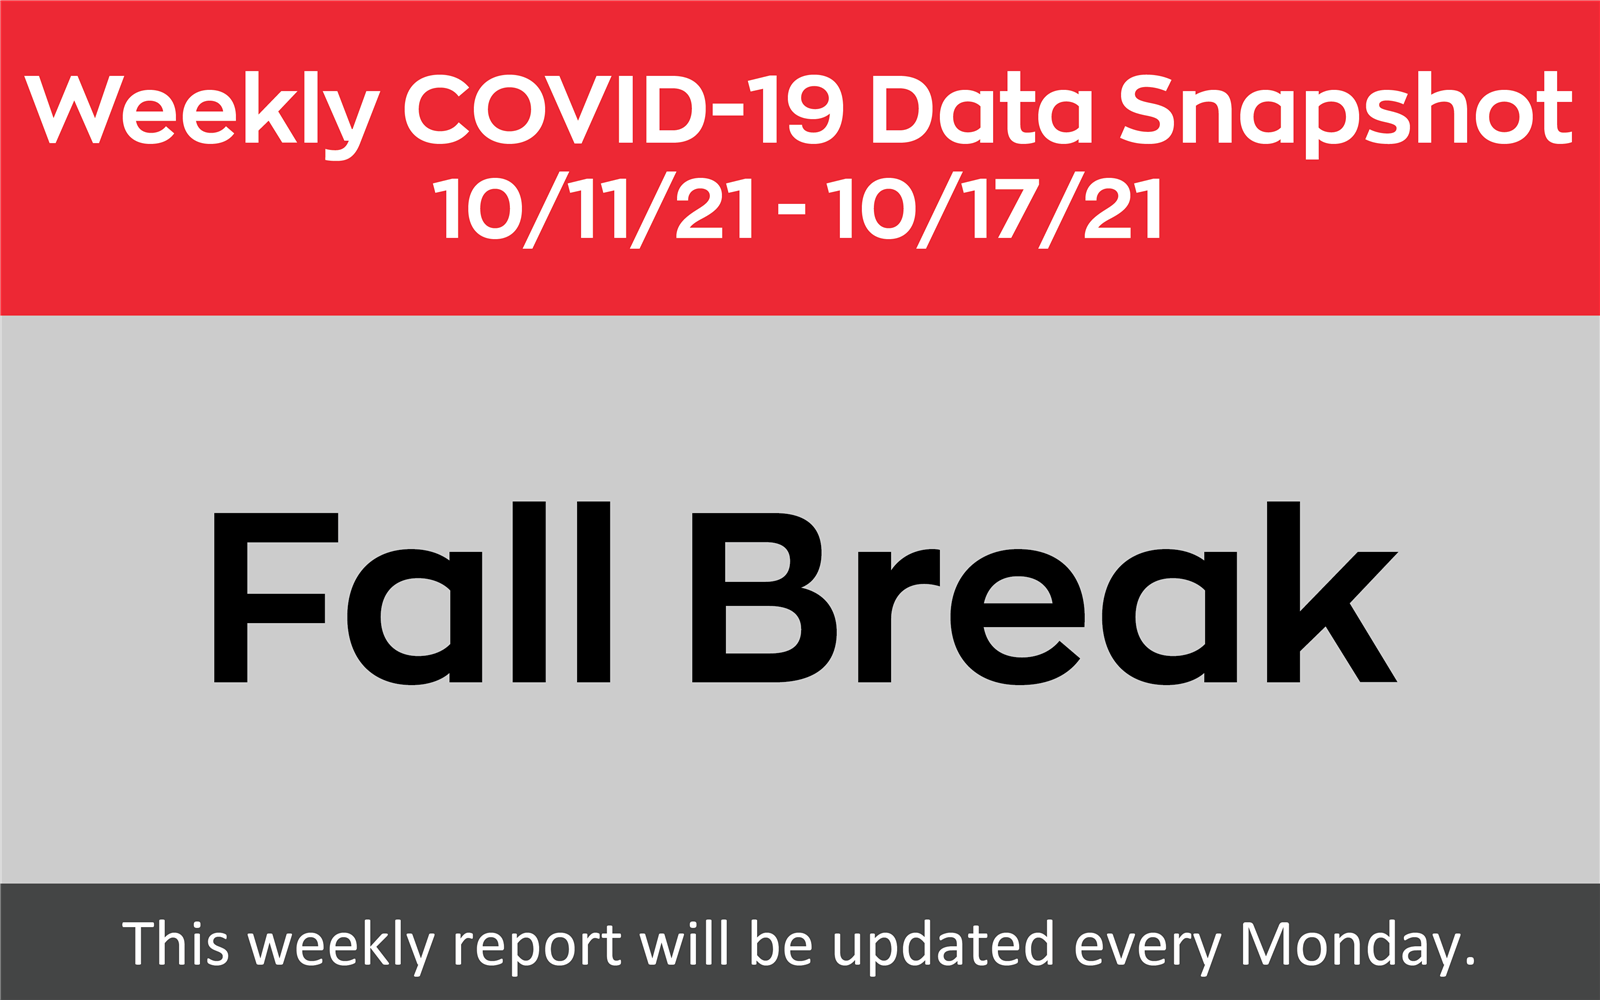 COVID-19 Data Snapshot - 10-11-21 to 10-17-21